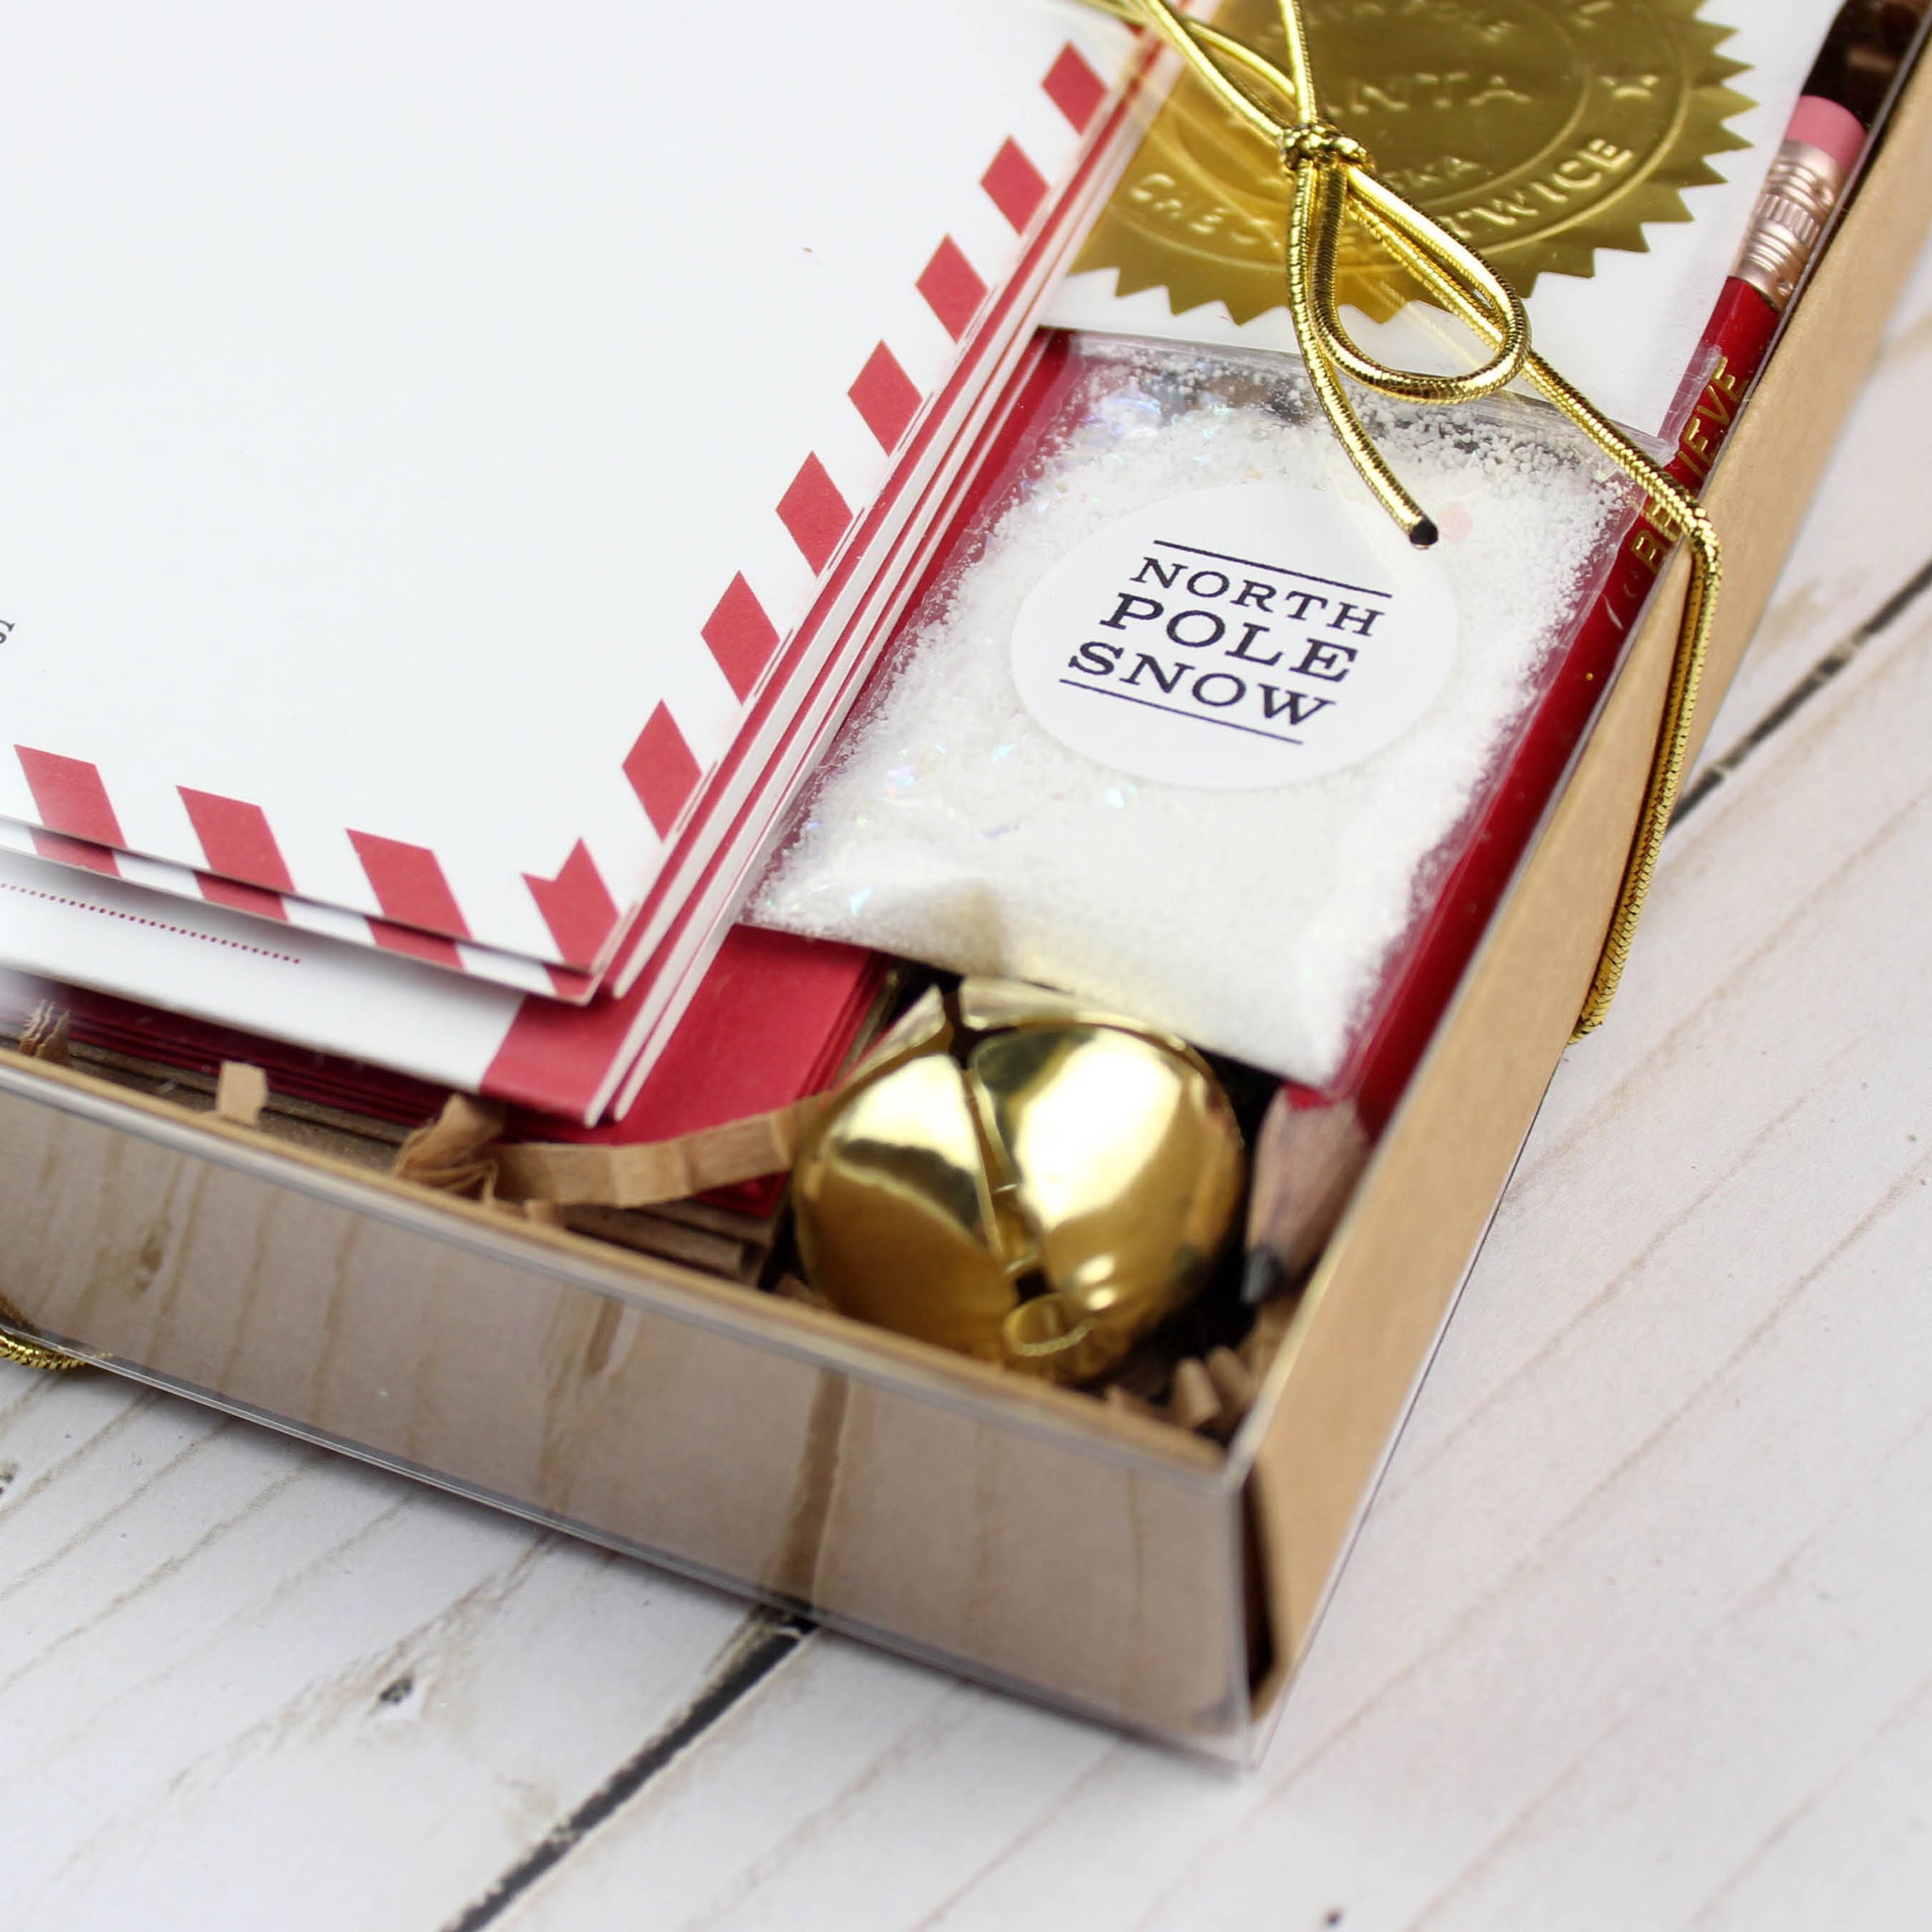 Dear Santa Letter Writing Kit – Speckled Frog Toys & Books